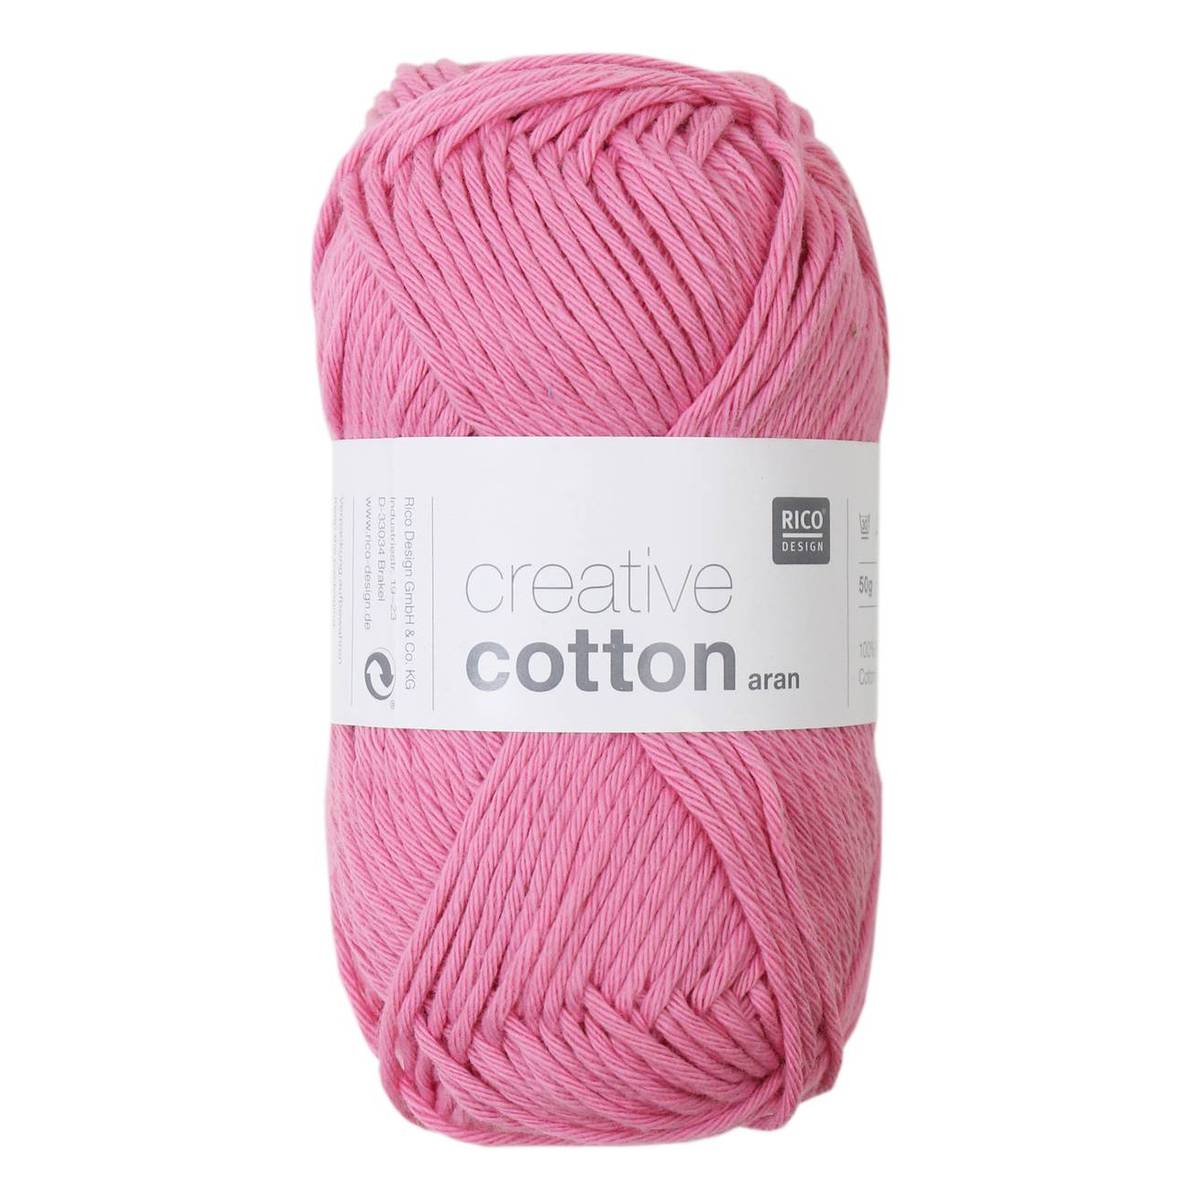 Rico Candy Pink Creative Cotton Aran Yarn 50 g | Hobbycraft